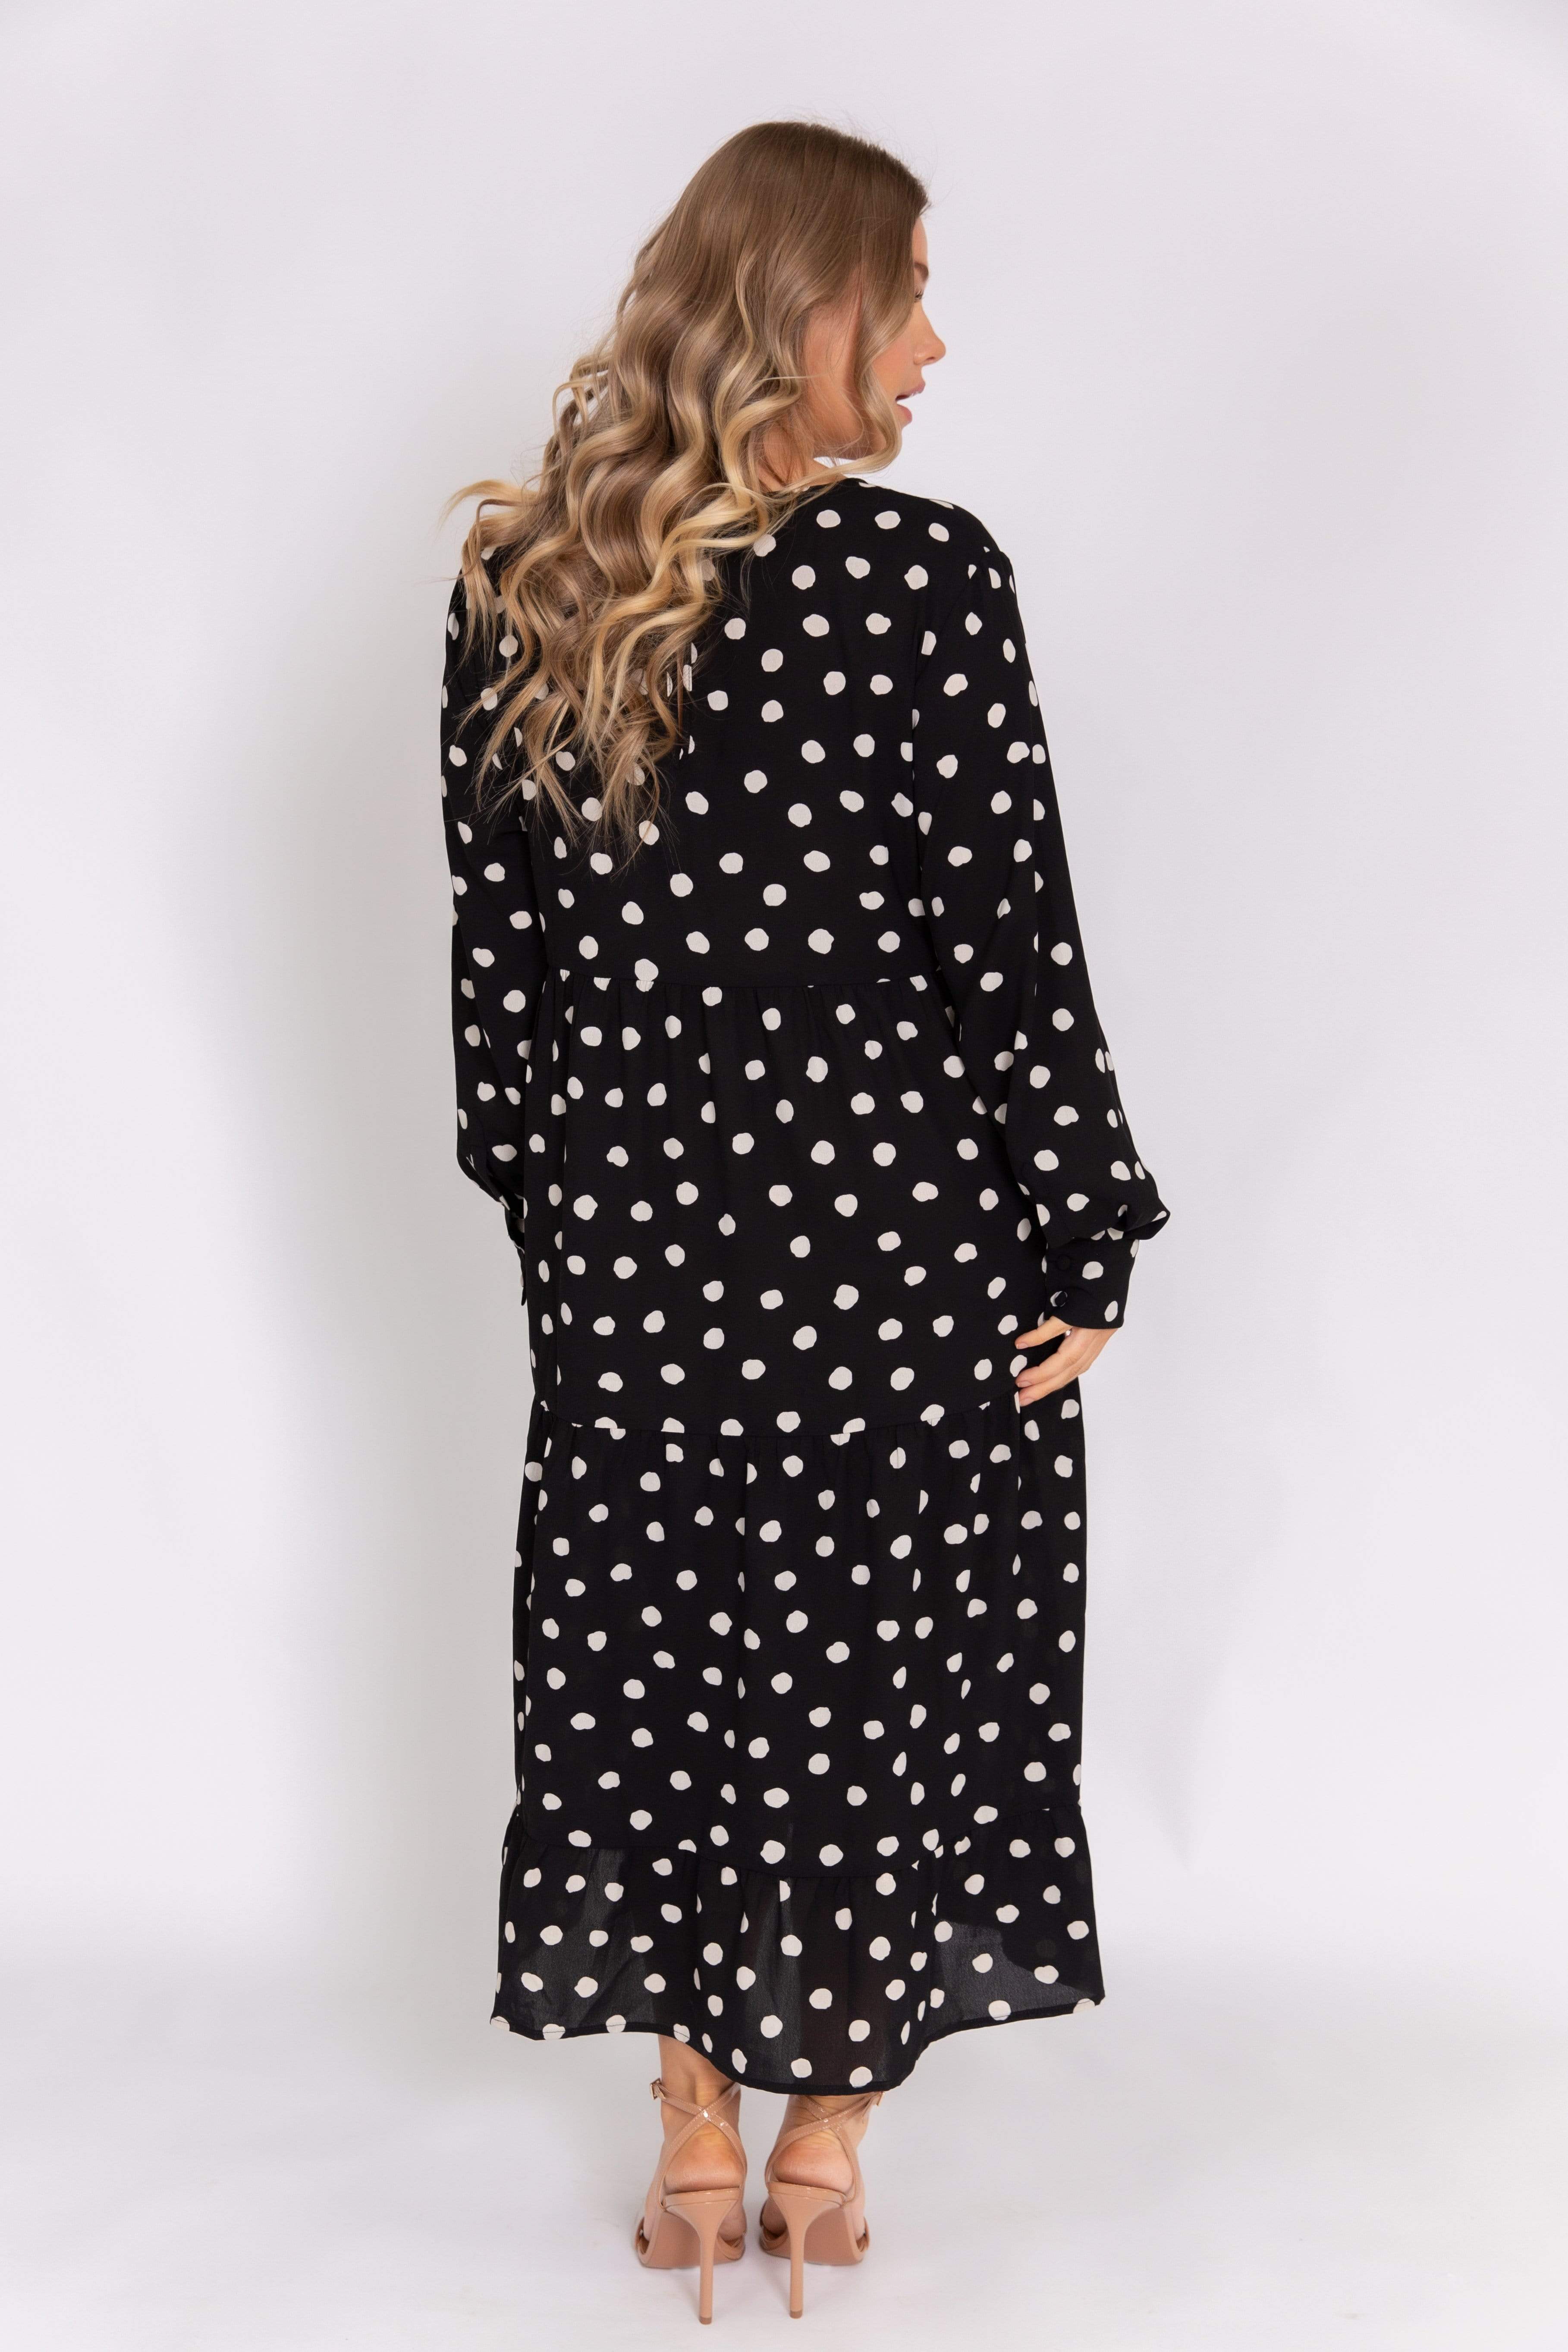 Curve Dotty Day Dress - Black Polka Dot (4827780907101)